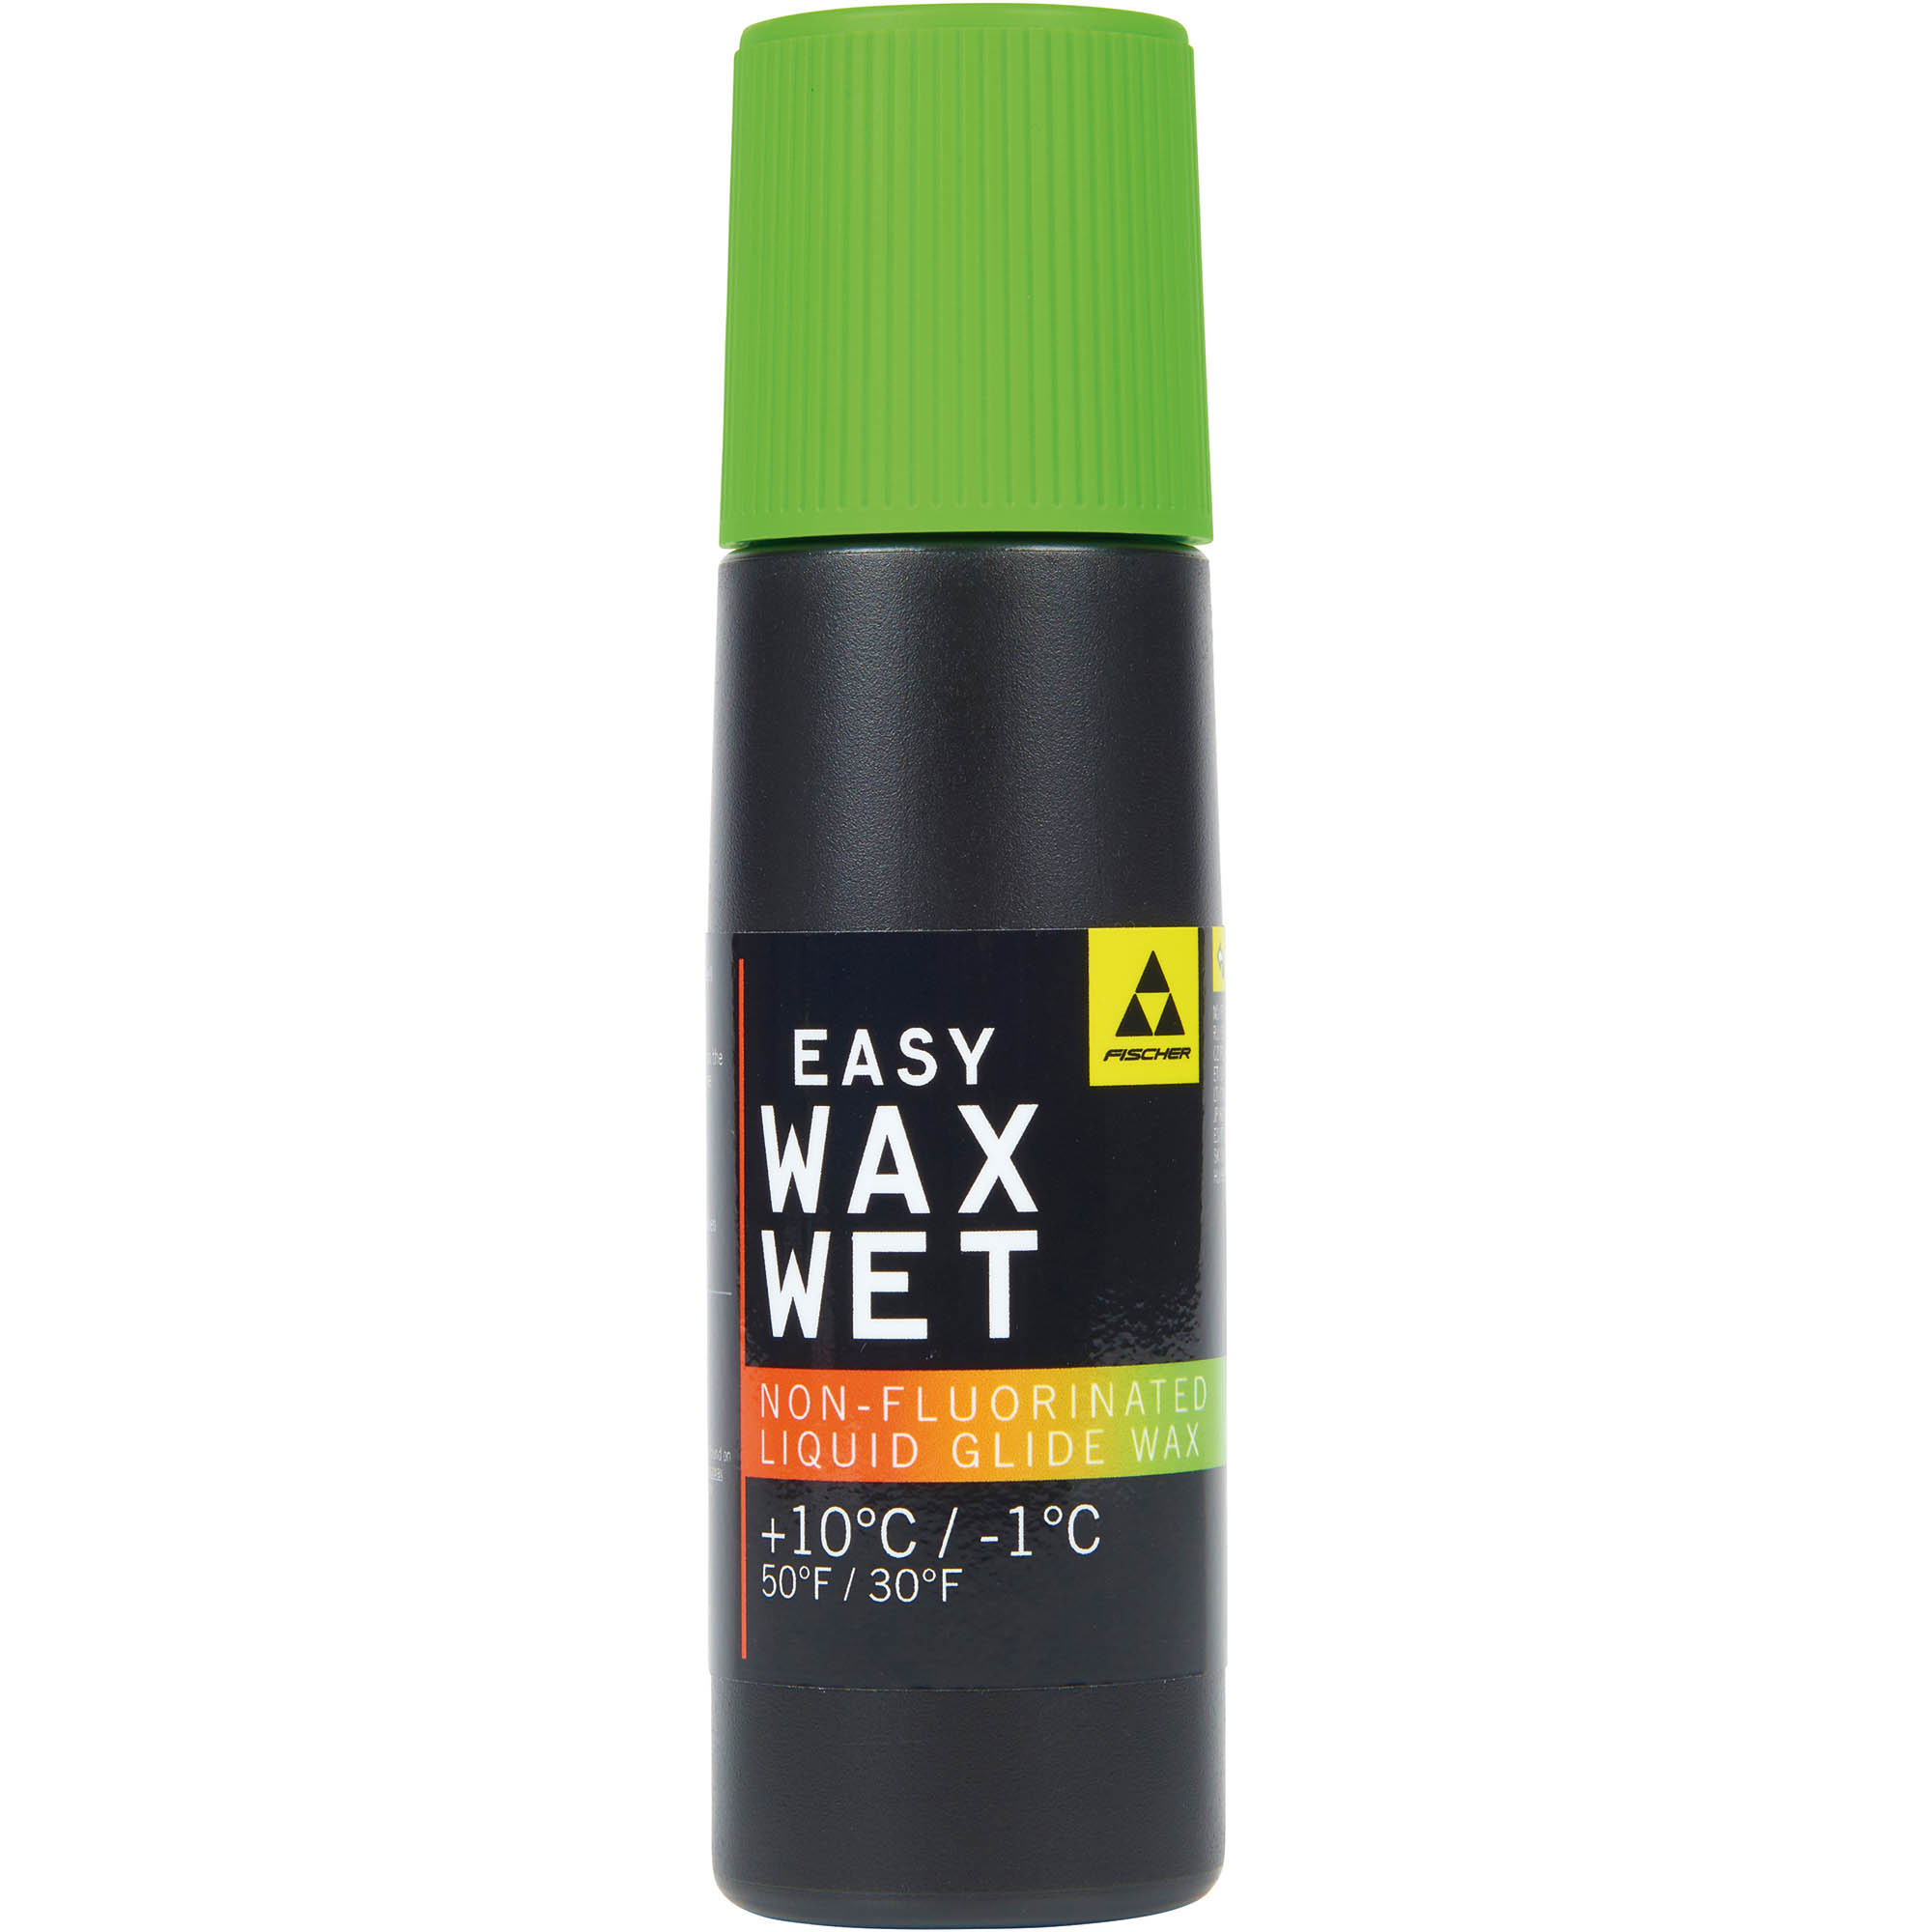 Easy Wax Wet NF